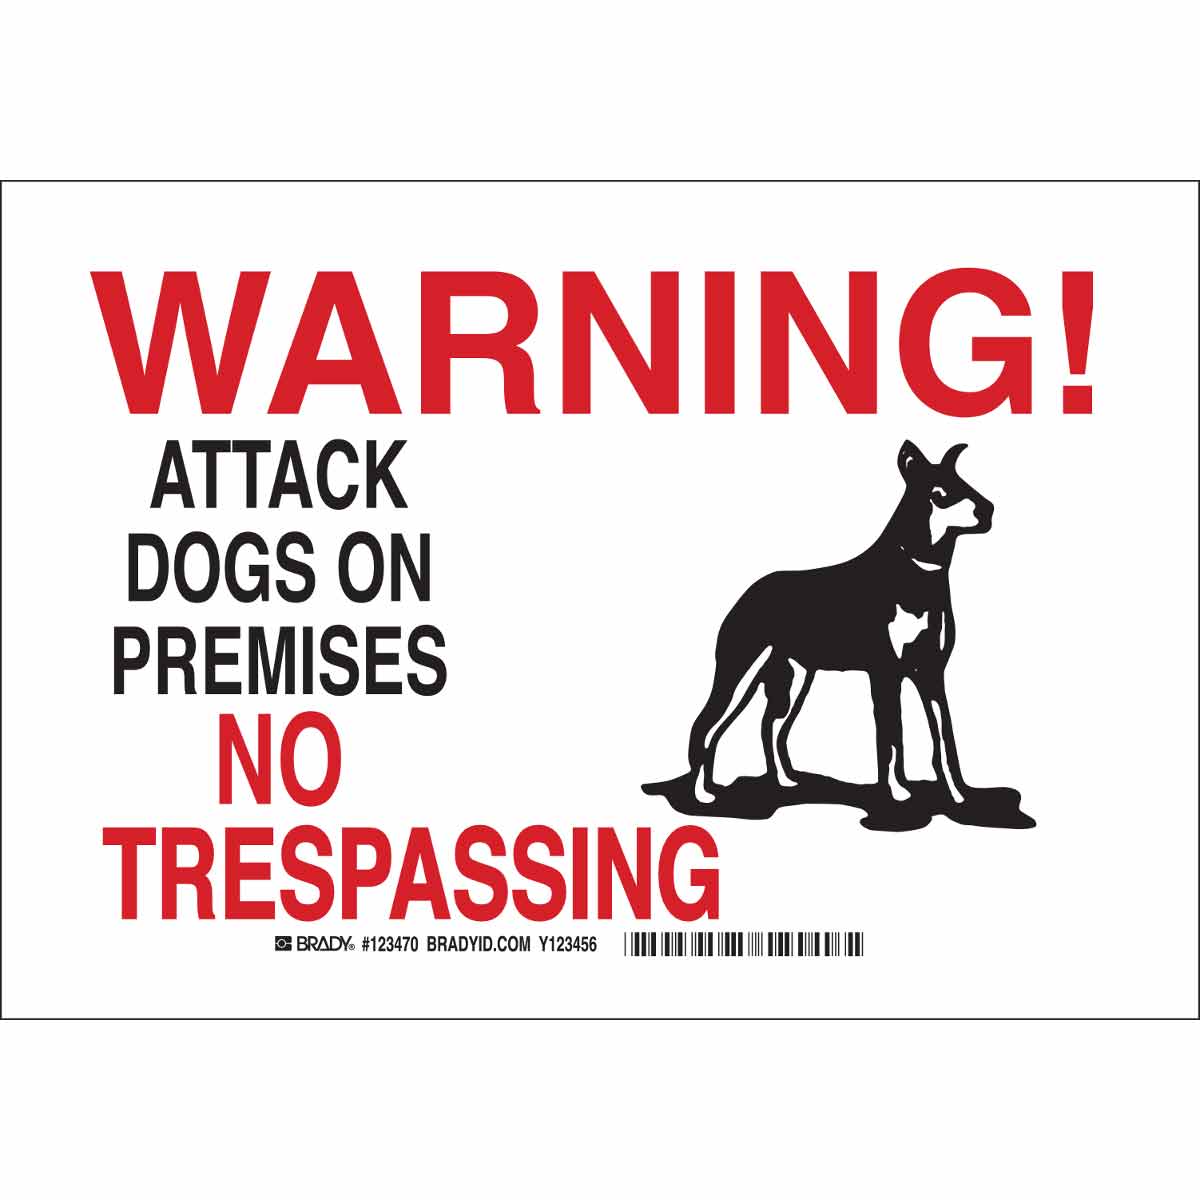 warning guard dog sign